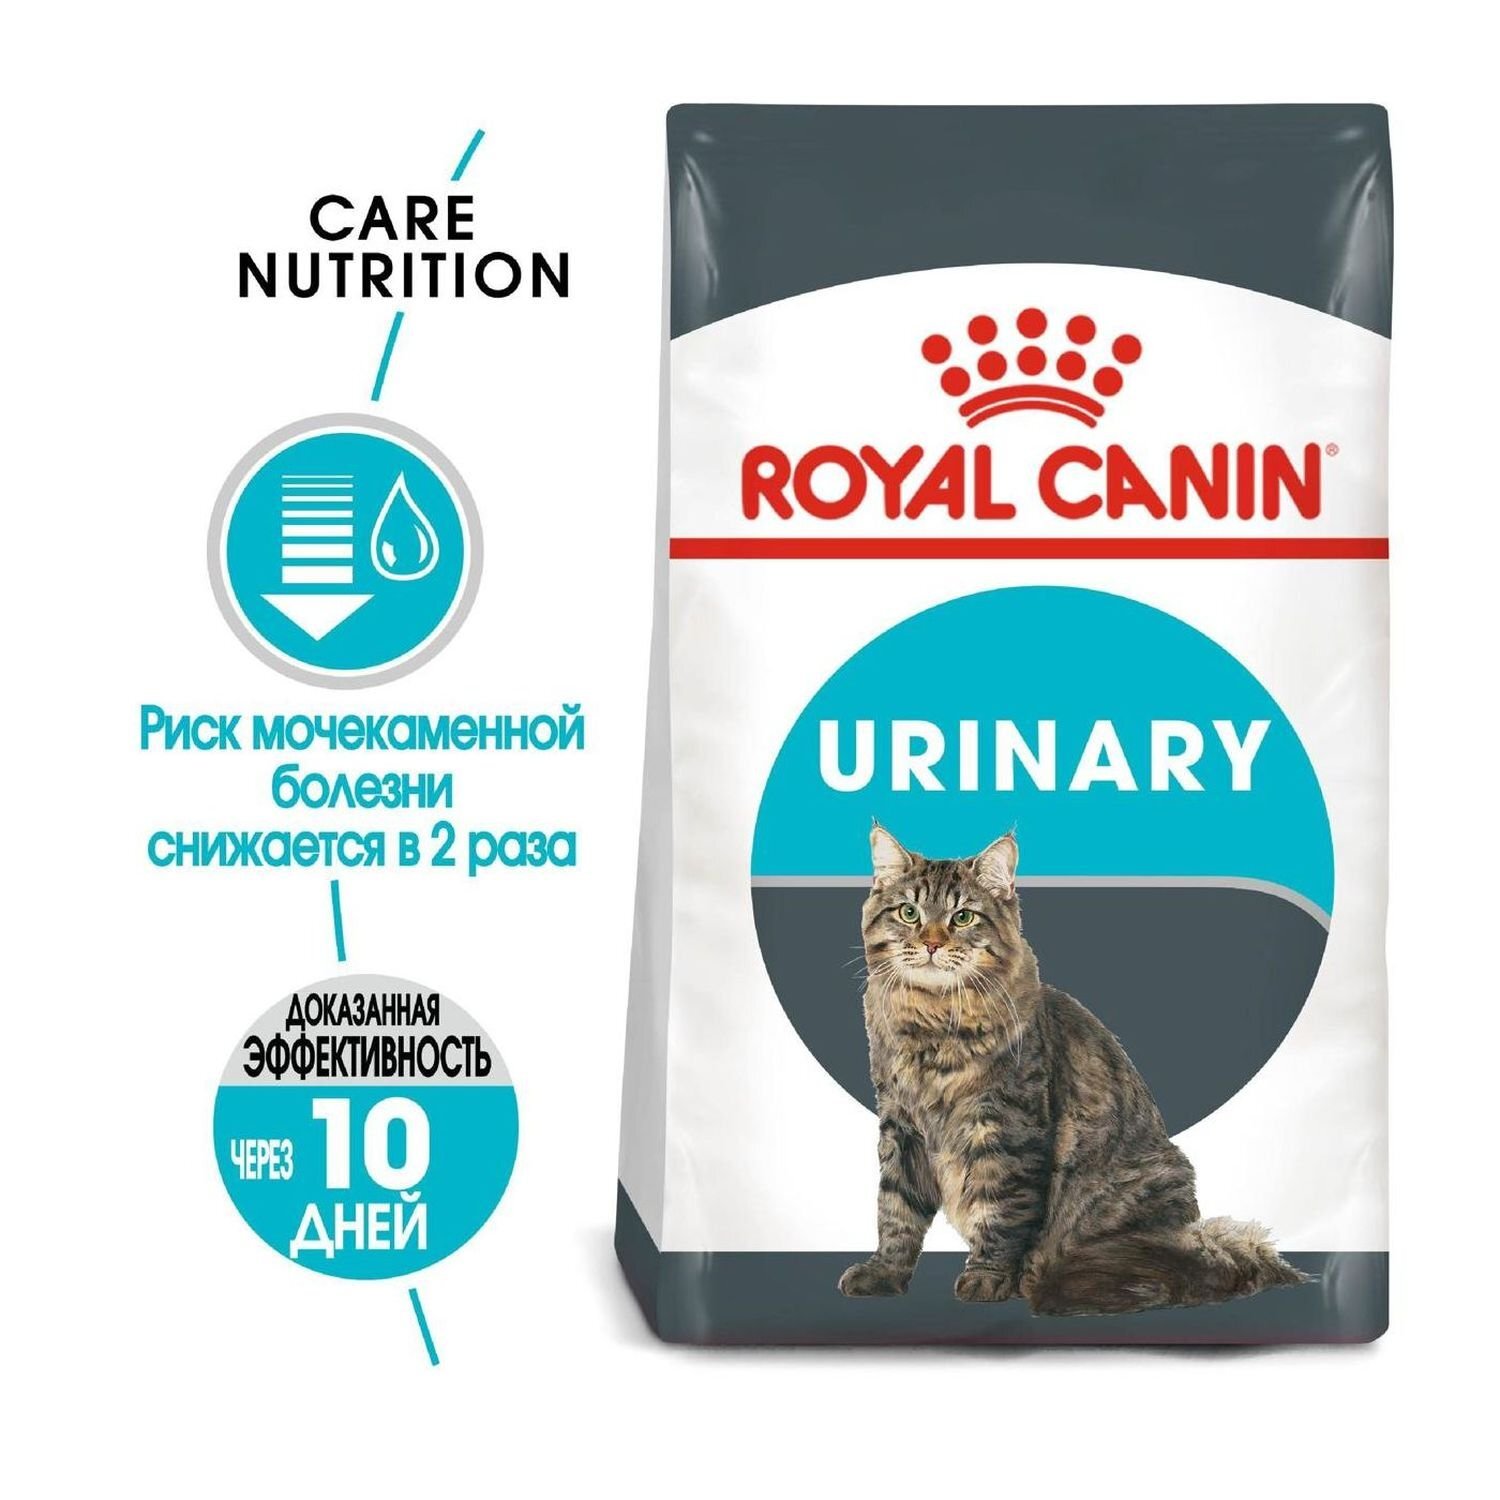 Уринари для кошек лечебный при мочекаменной. Royal Canin Digestive Care для кошек. Роял Канин Уринари профилактика. Роял Канин Urinary для кошек. Роял Канин Уринари для кошек профилактика мочекаменной.